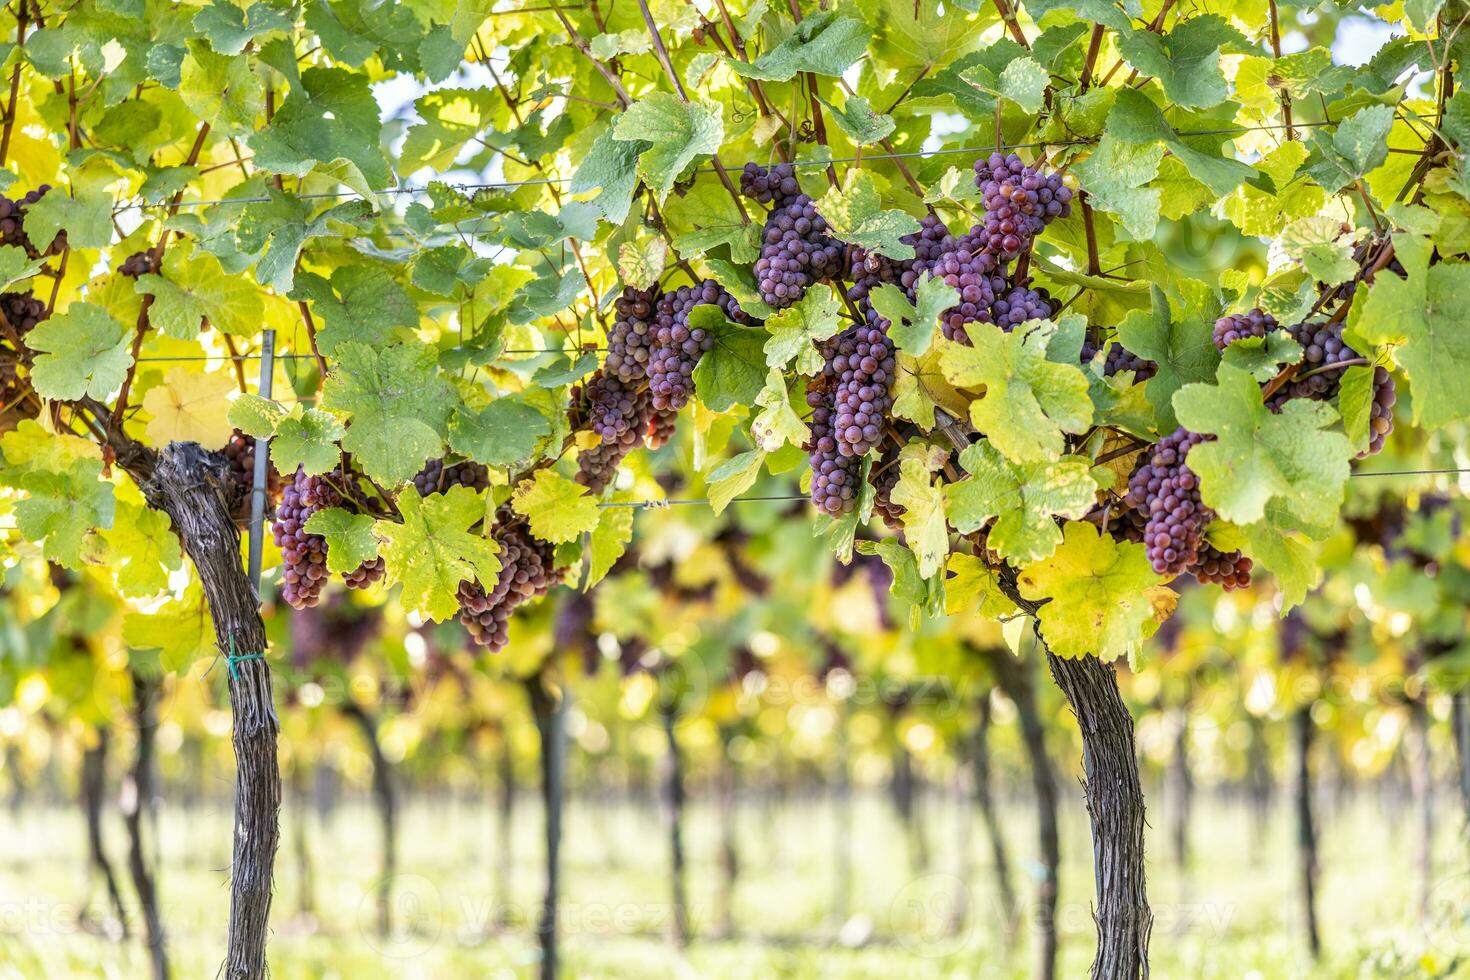 Purper trossen van druiven van de rood trainer verscheidenheid in een wijngaard rijpen voordat oogst foto